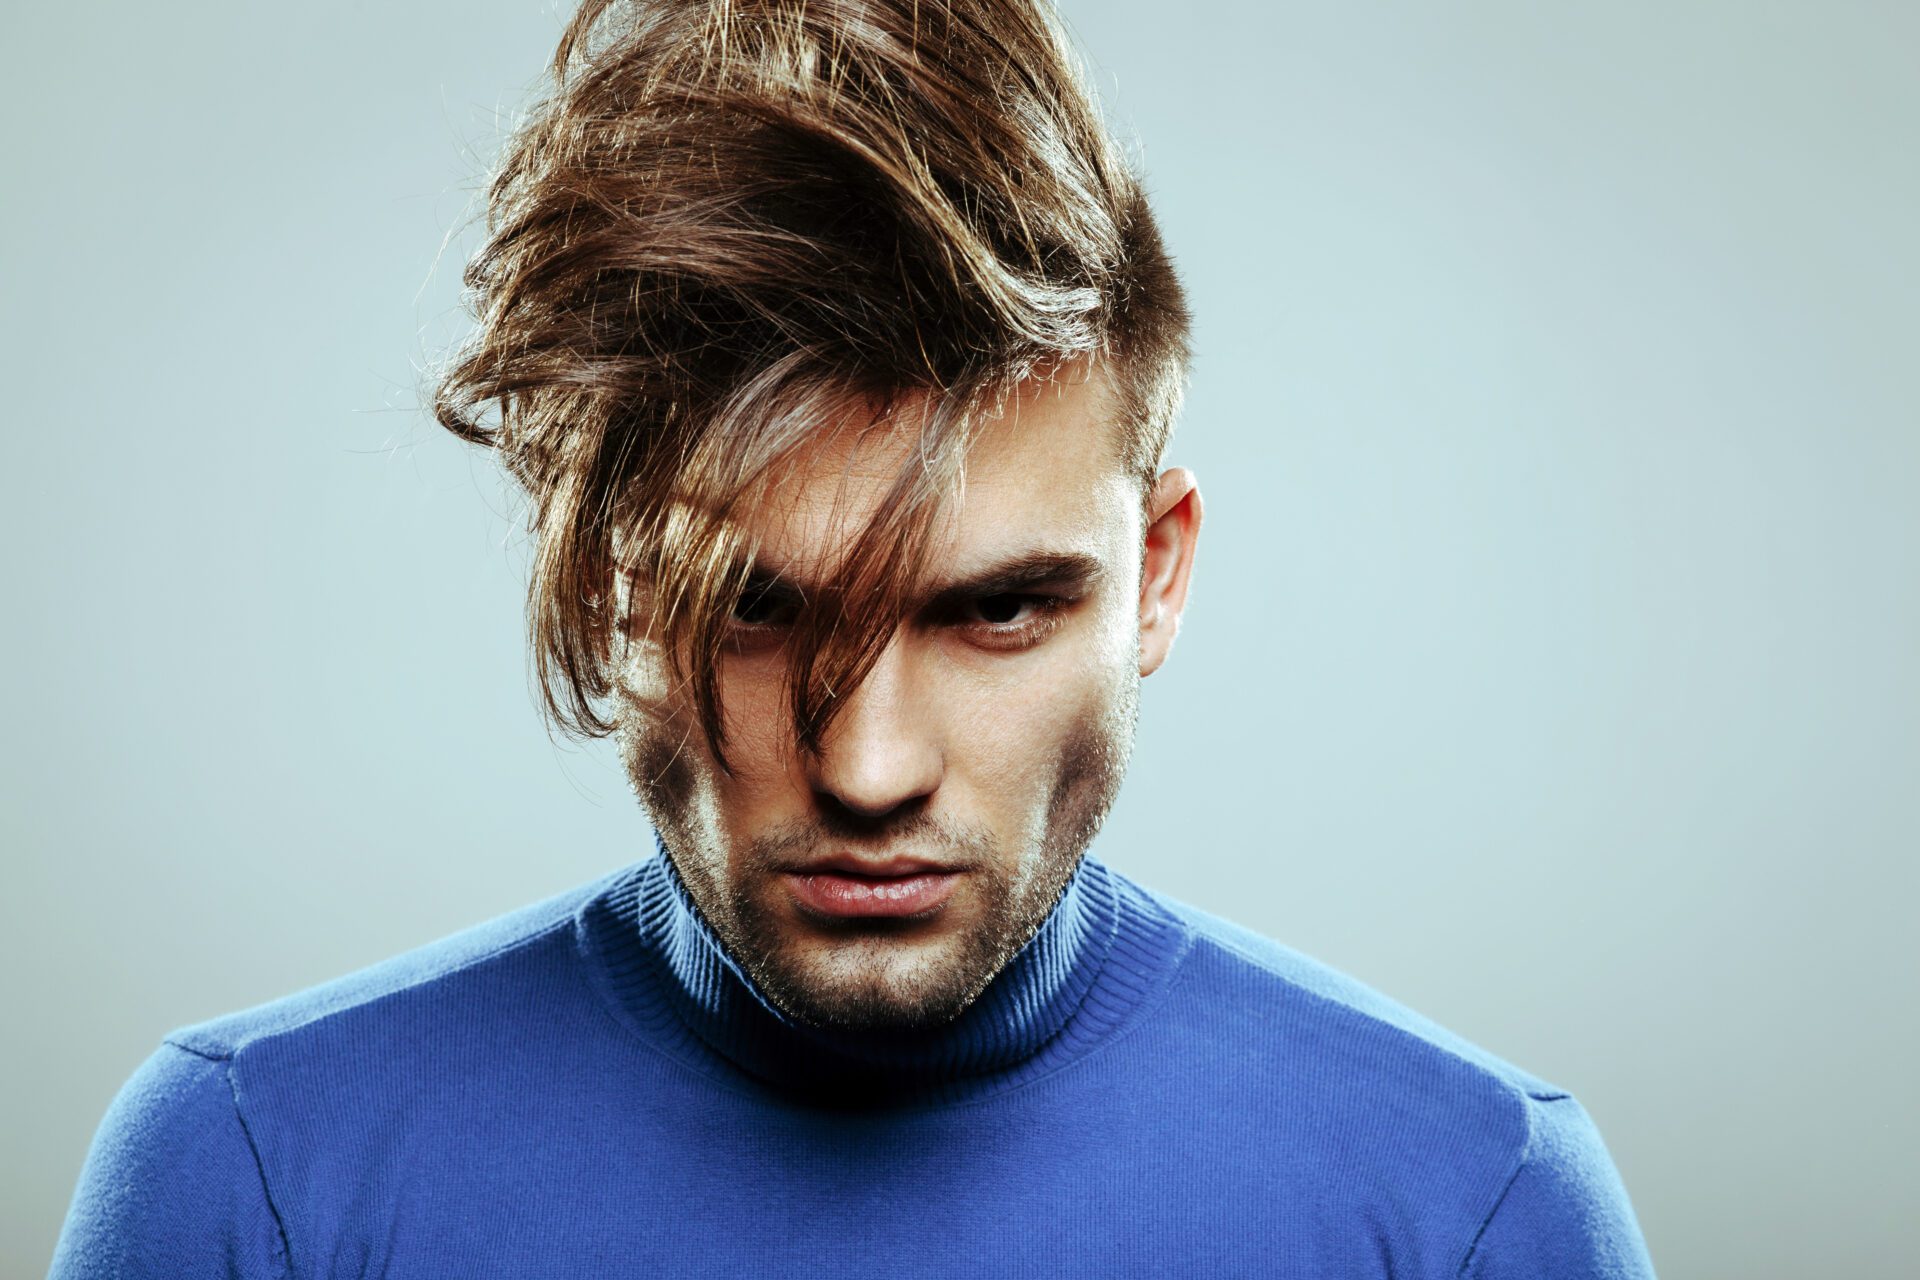 MEDIUM HAIR HAIRCUT FOR MEN - Mens Hairstyle 2020